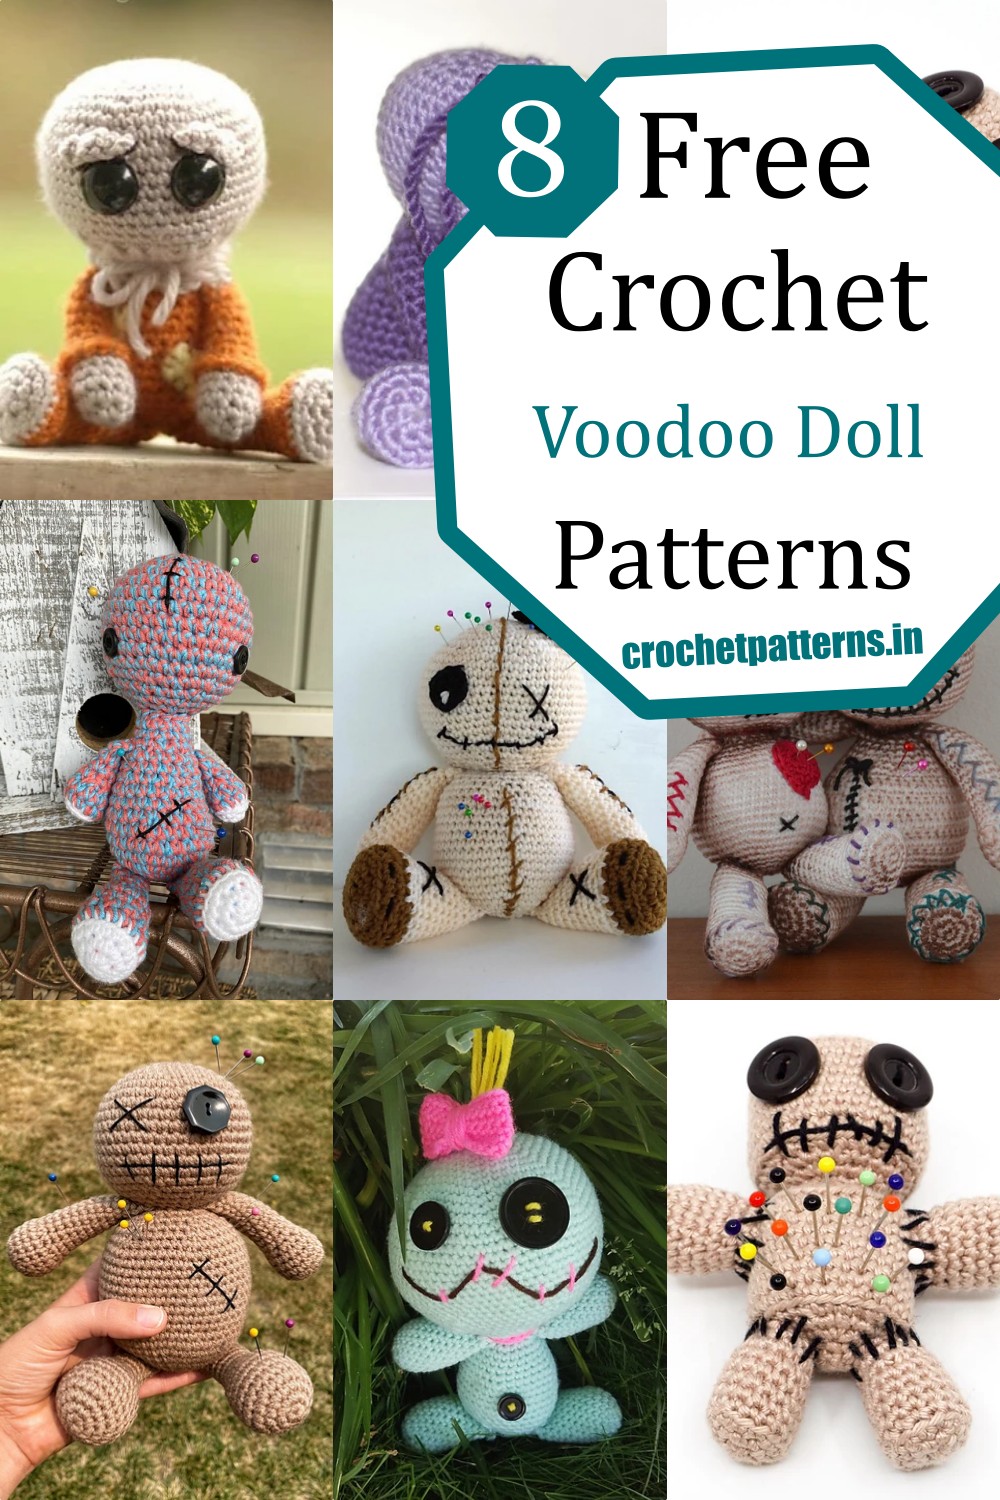 8 Crochet Voodoo Doll Patterns